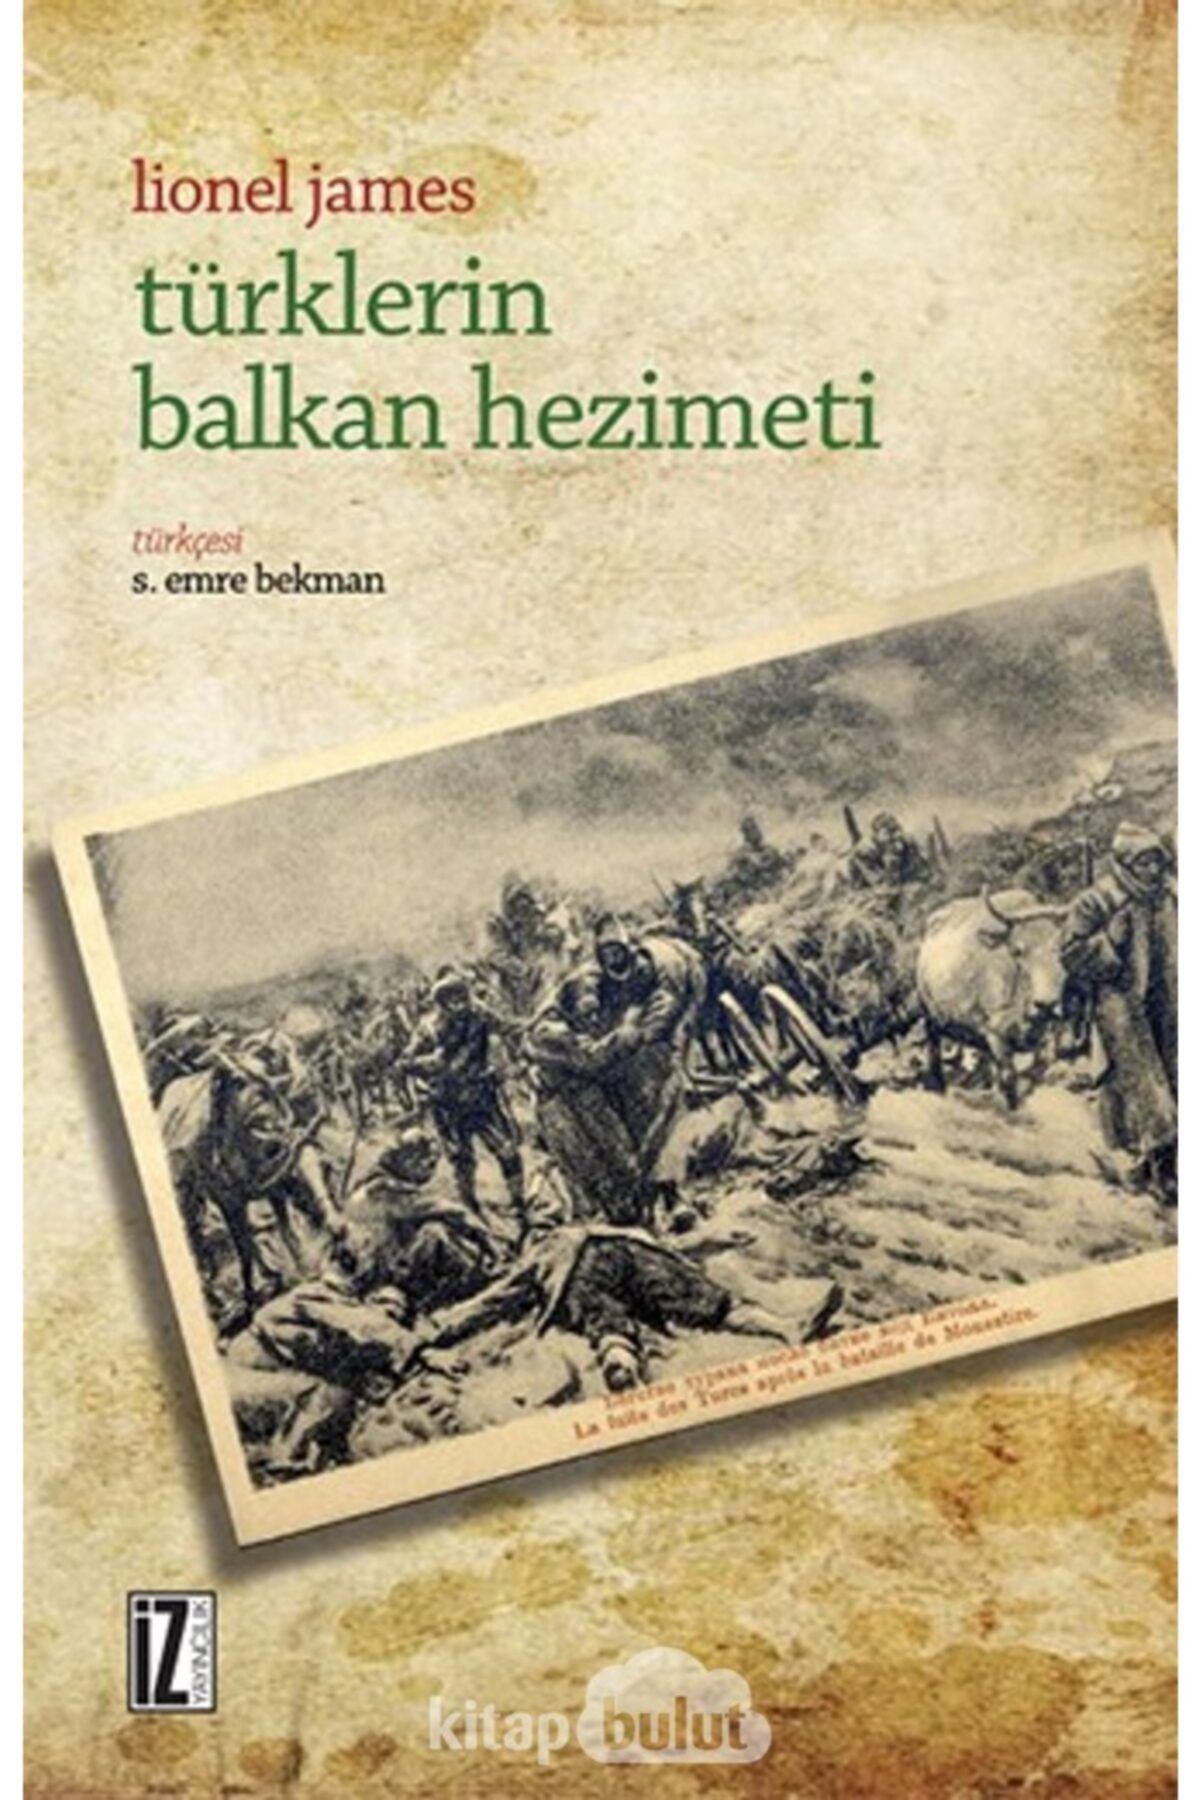 İz Yayıncılık Türklerin Balkan Hezimeti / Lionel James /